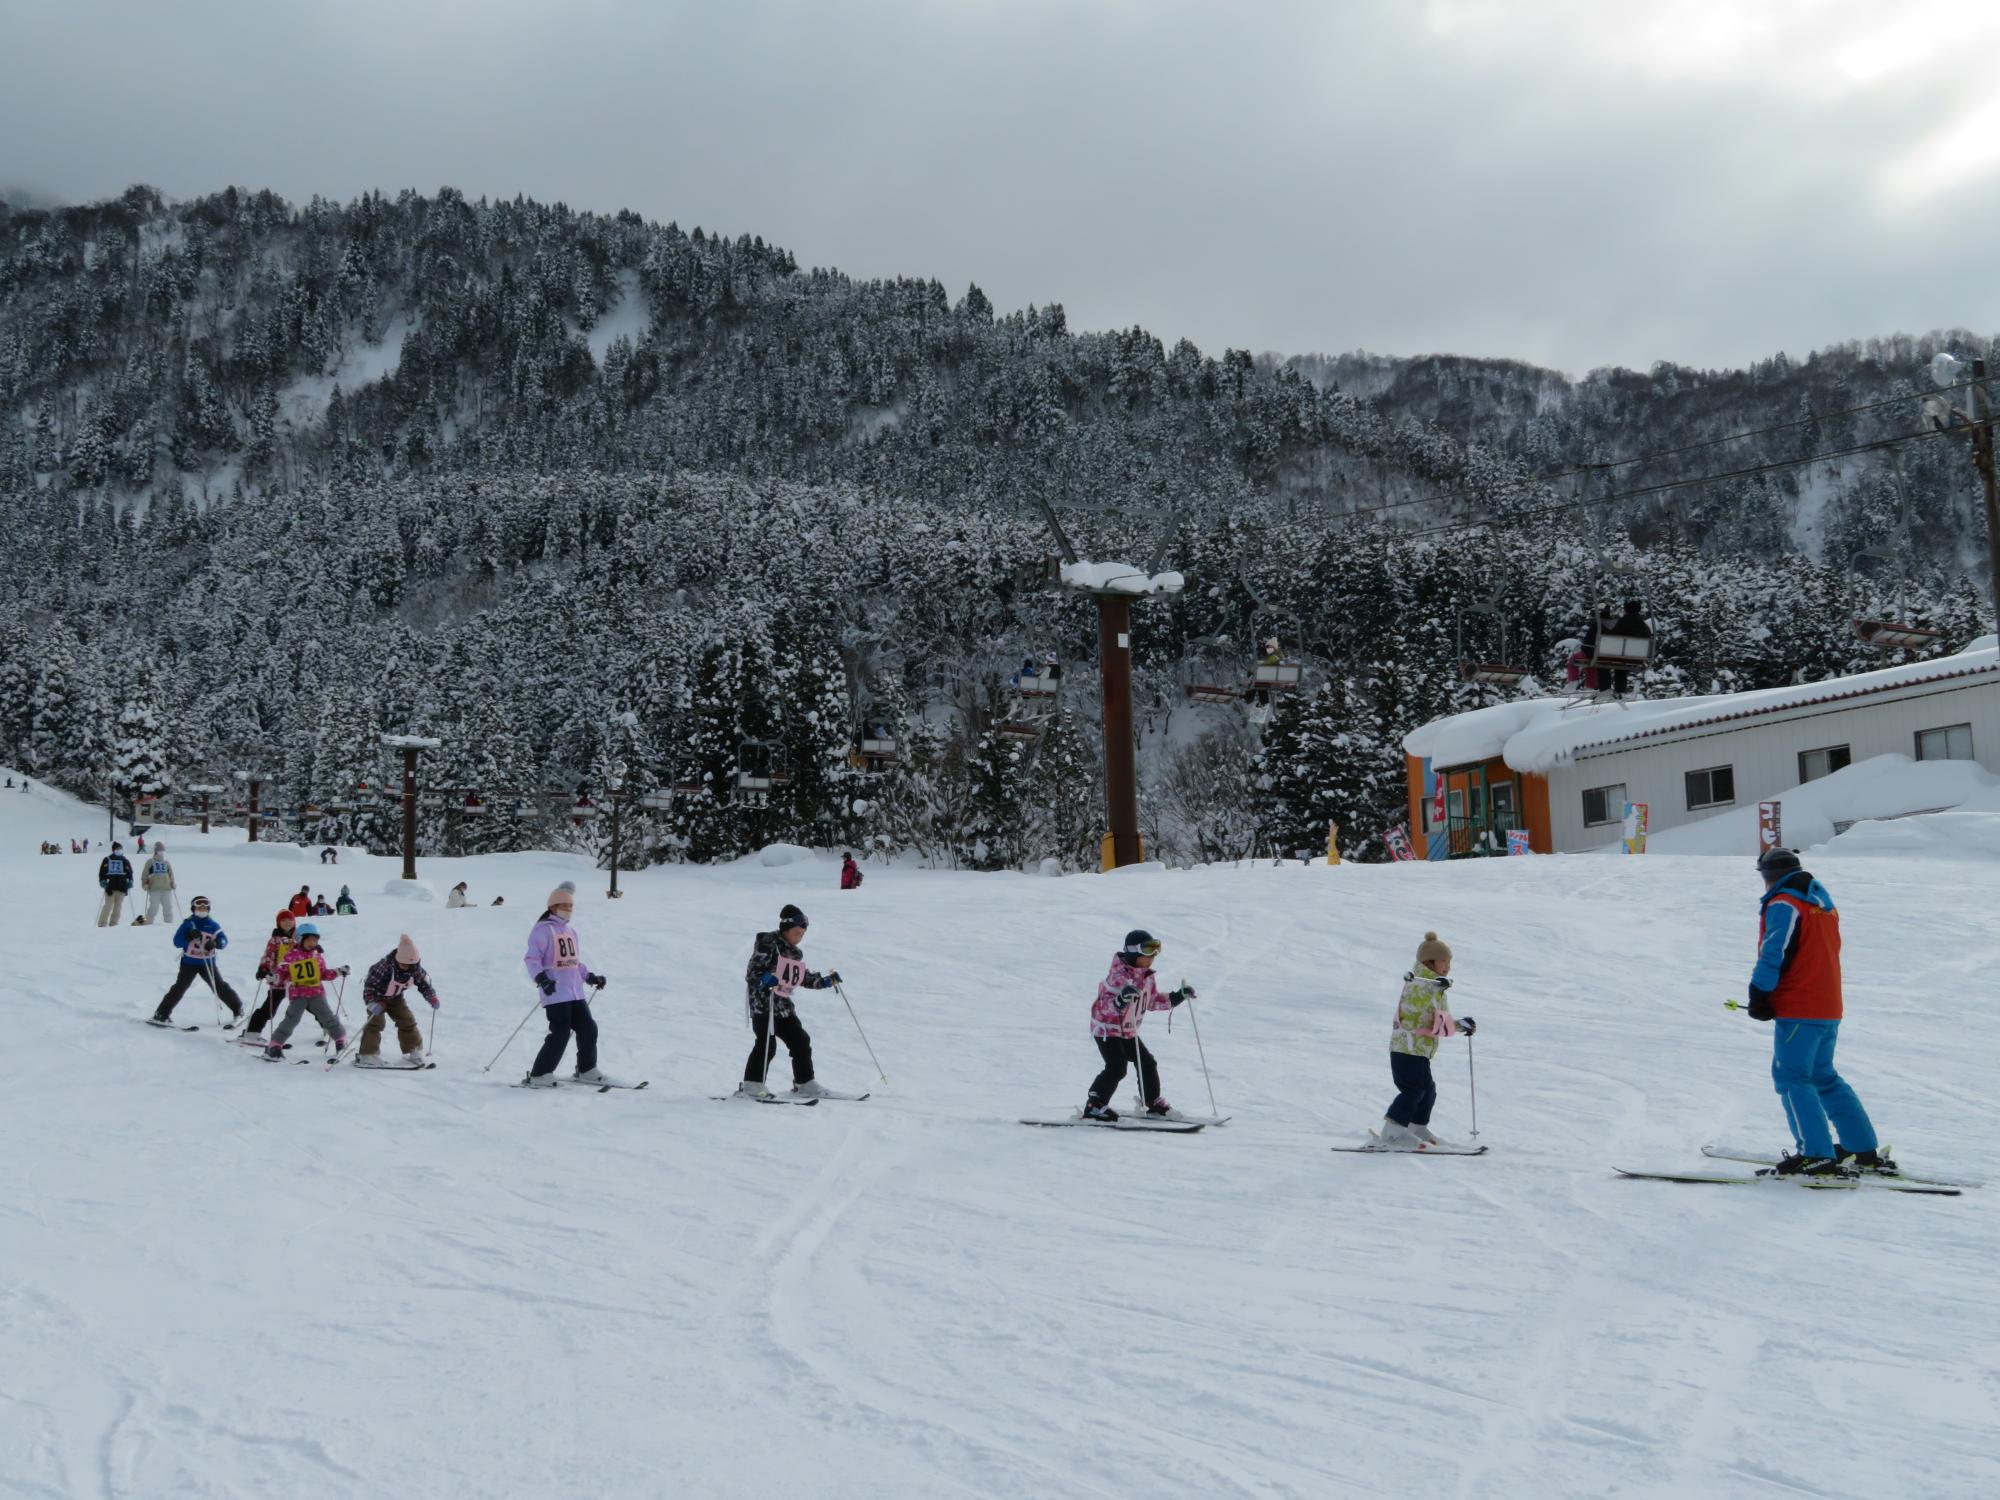 第42回親子スキー・スノーボードの集い